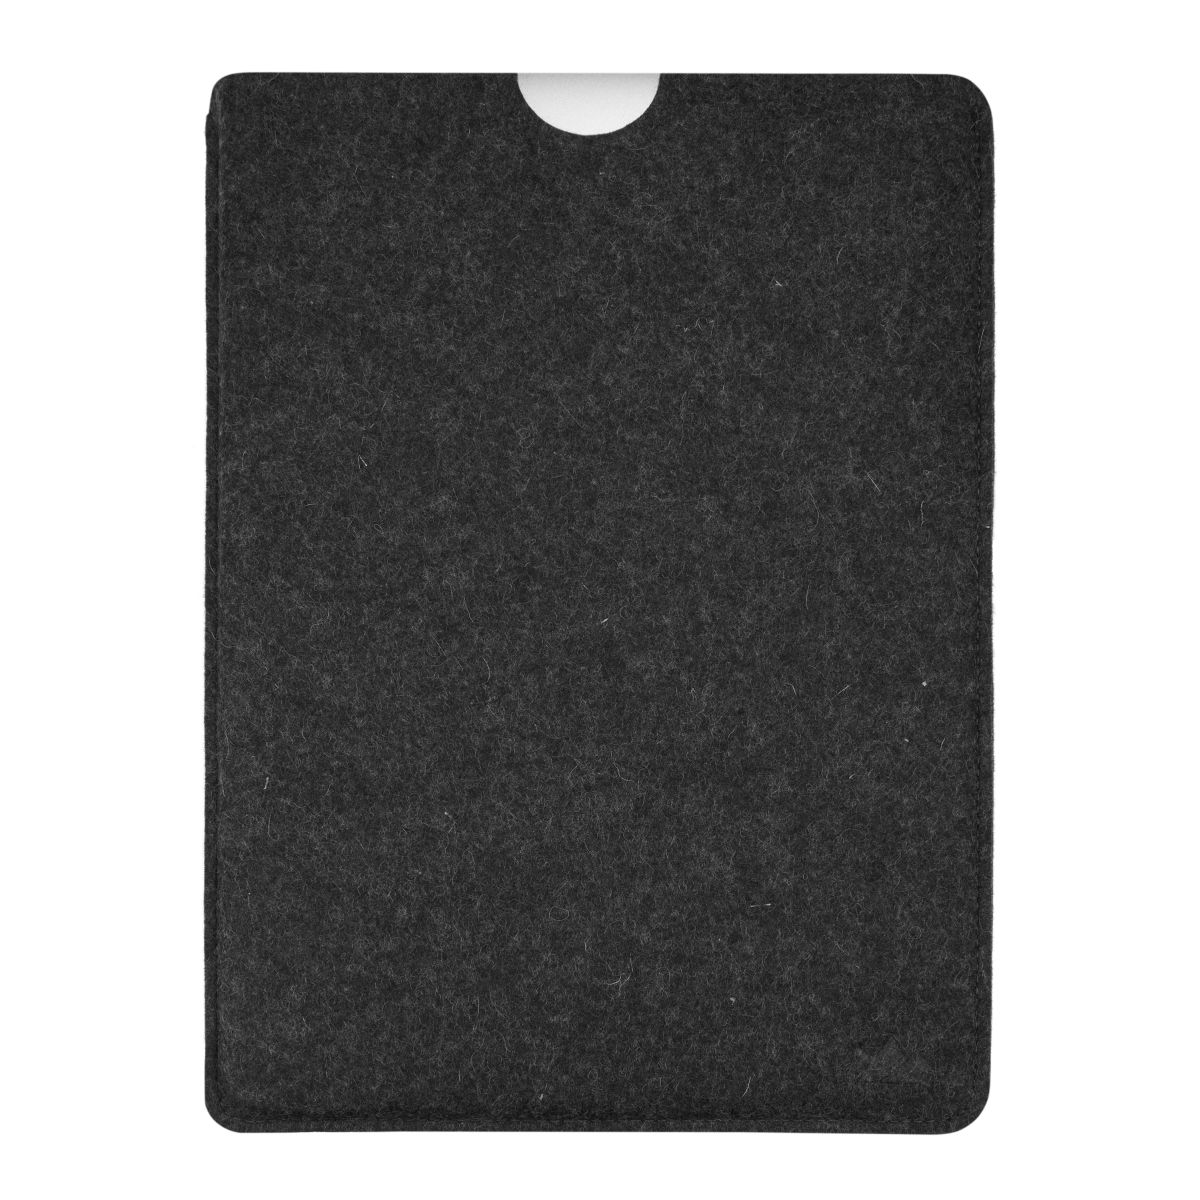 Apple Filz Anthrazit Laptop für (100% Sleeve Tasche Schurwolle), COVERKINGZ Notebook